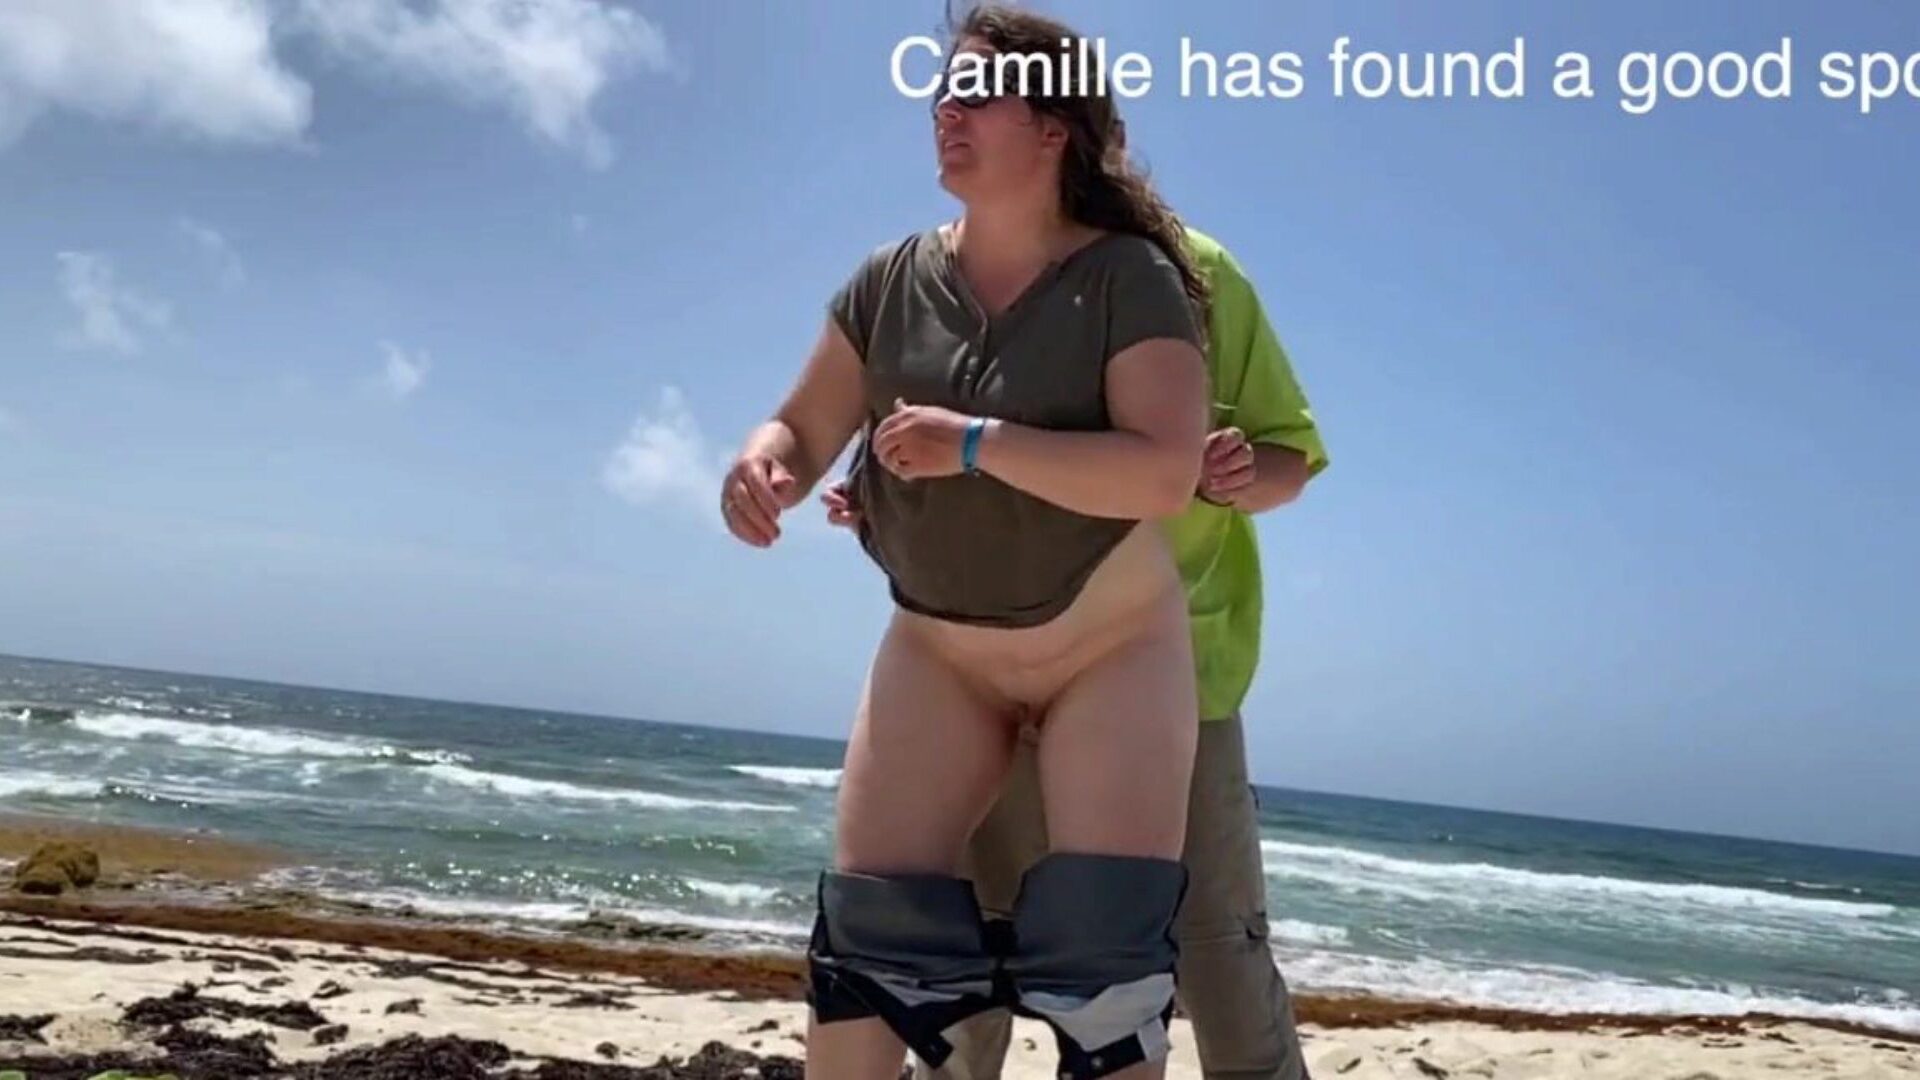 Camille obserwowała, jak garb się na plaży Camille znalazła cenne miejsce, a niektórzy obserwują, że jest głośno, więc wszyscy będą oglądać